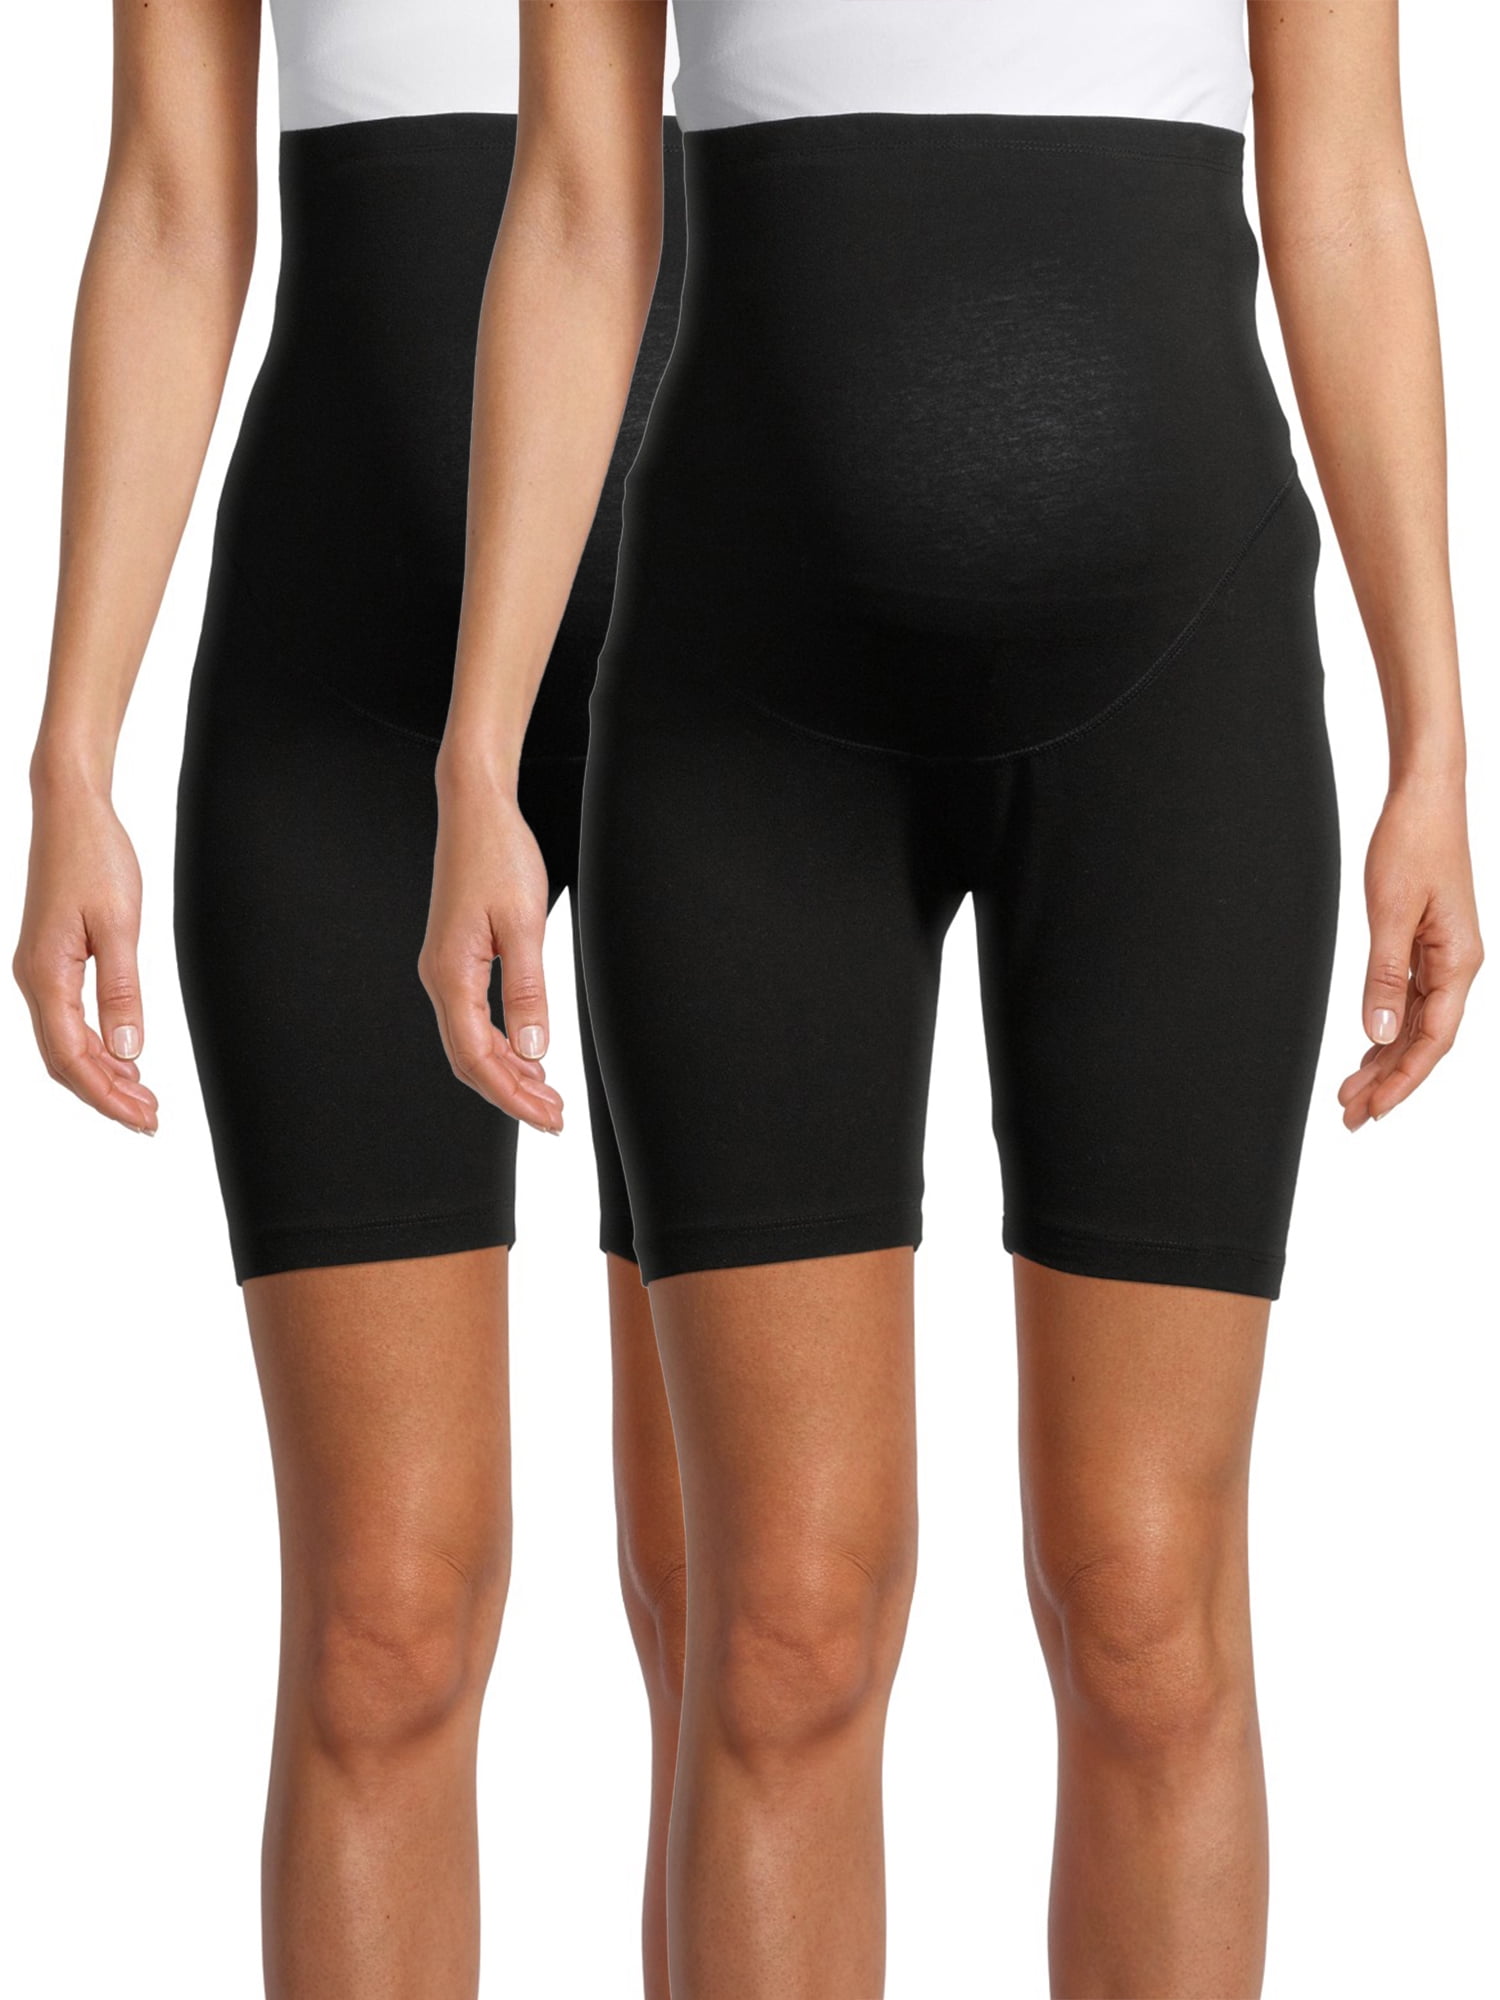 Black Wide Band Maternity Biker Shorts– PinkBlush